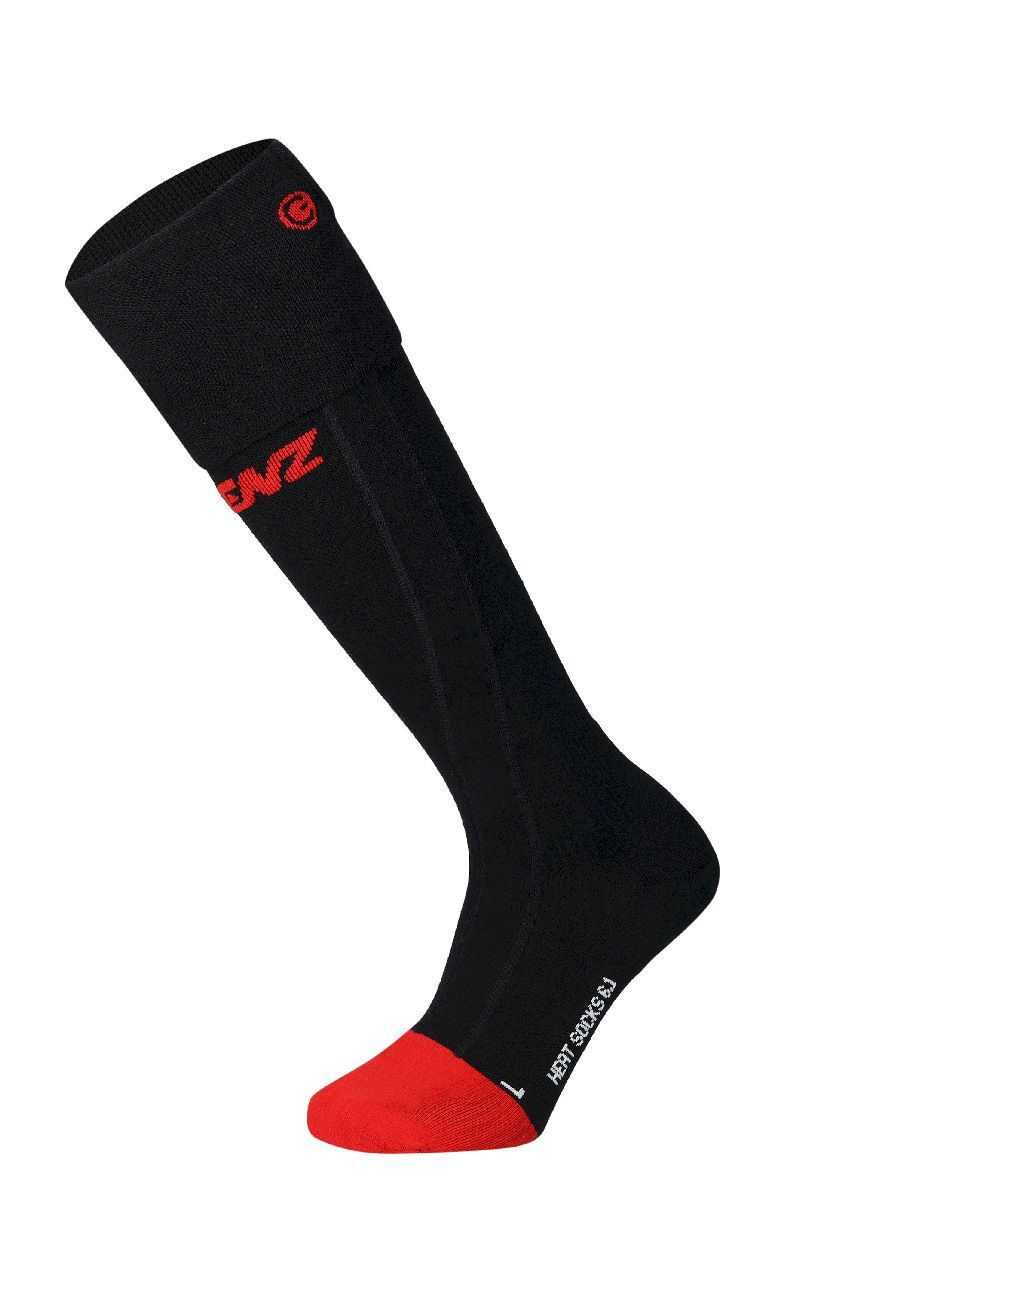 Lenz Heat Sock 6.1 Merino Compression - Ski socks